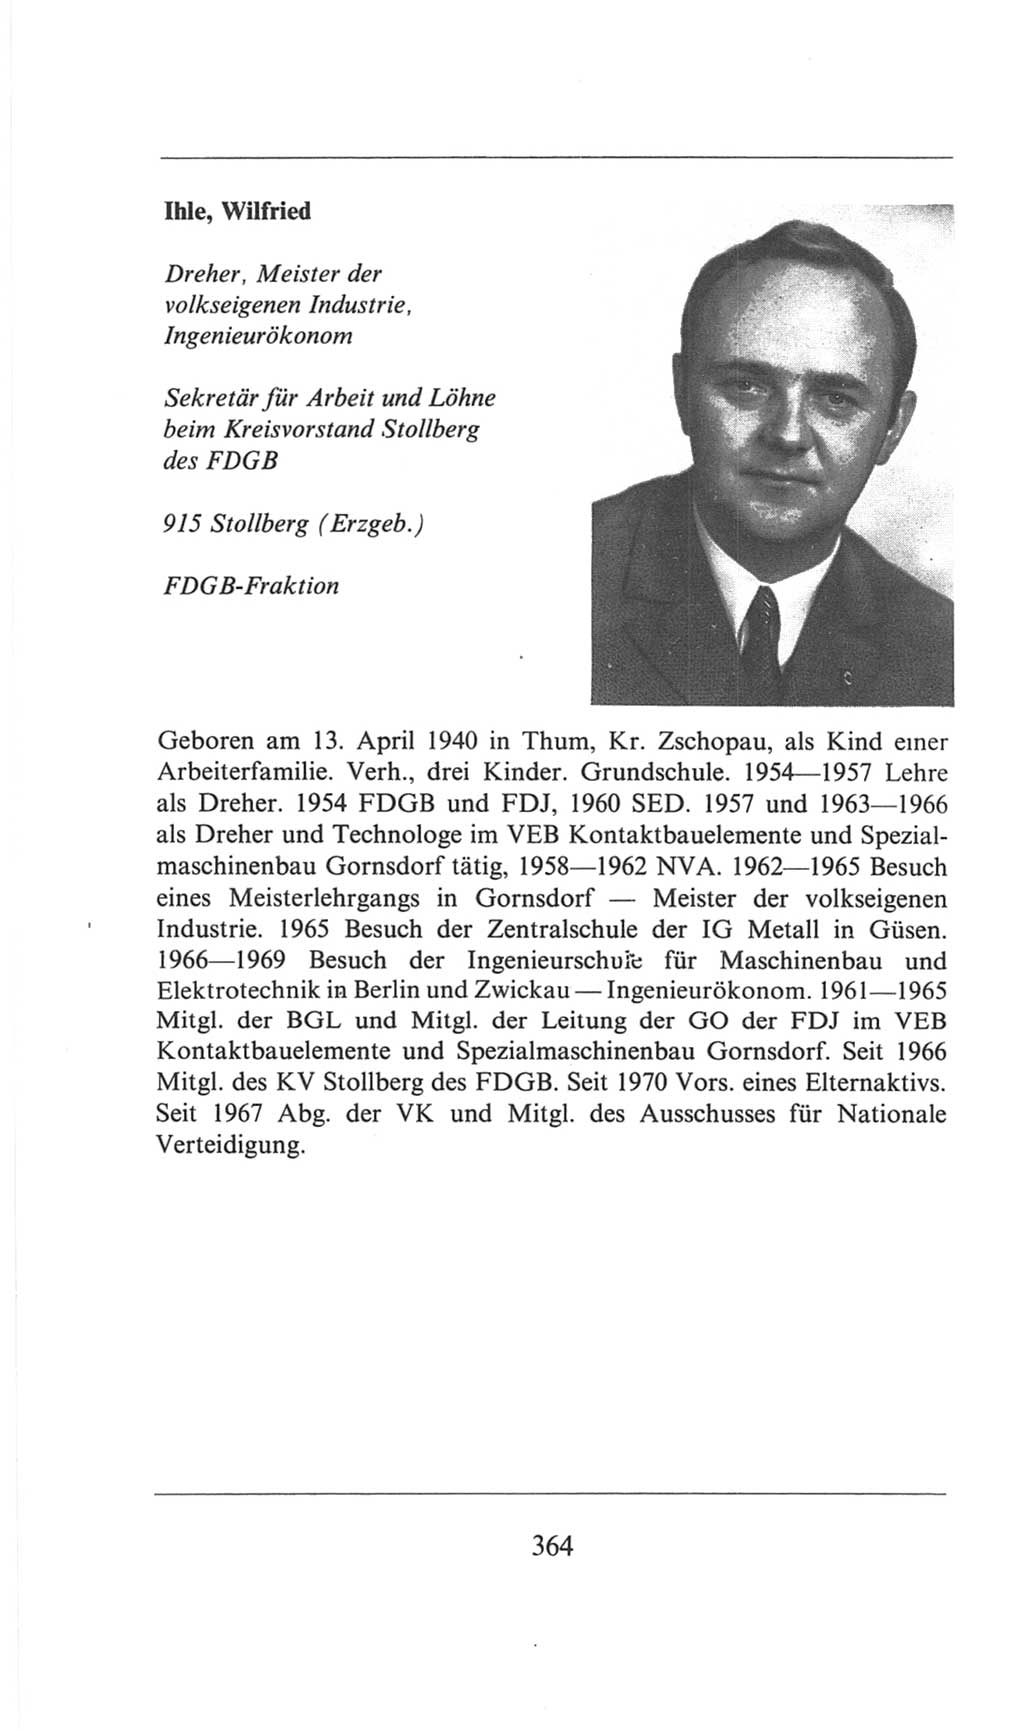 Volkskammer (VK) der Deutschen Demokratischen Republik (DDR), 6. Wahlperiode 1971-1976, Seite 364 (VK. DDR 6. WP. 1971-1976, S. 364)